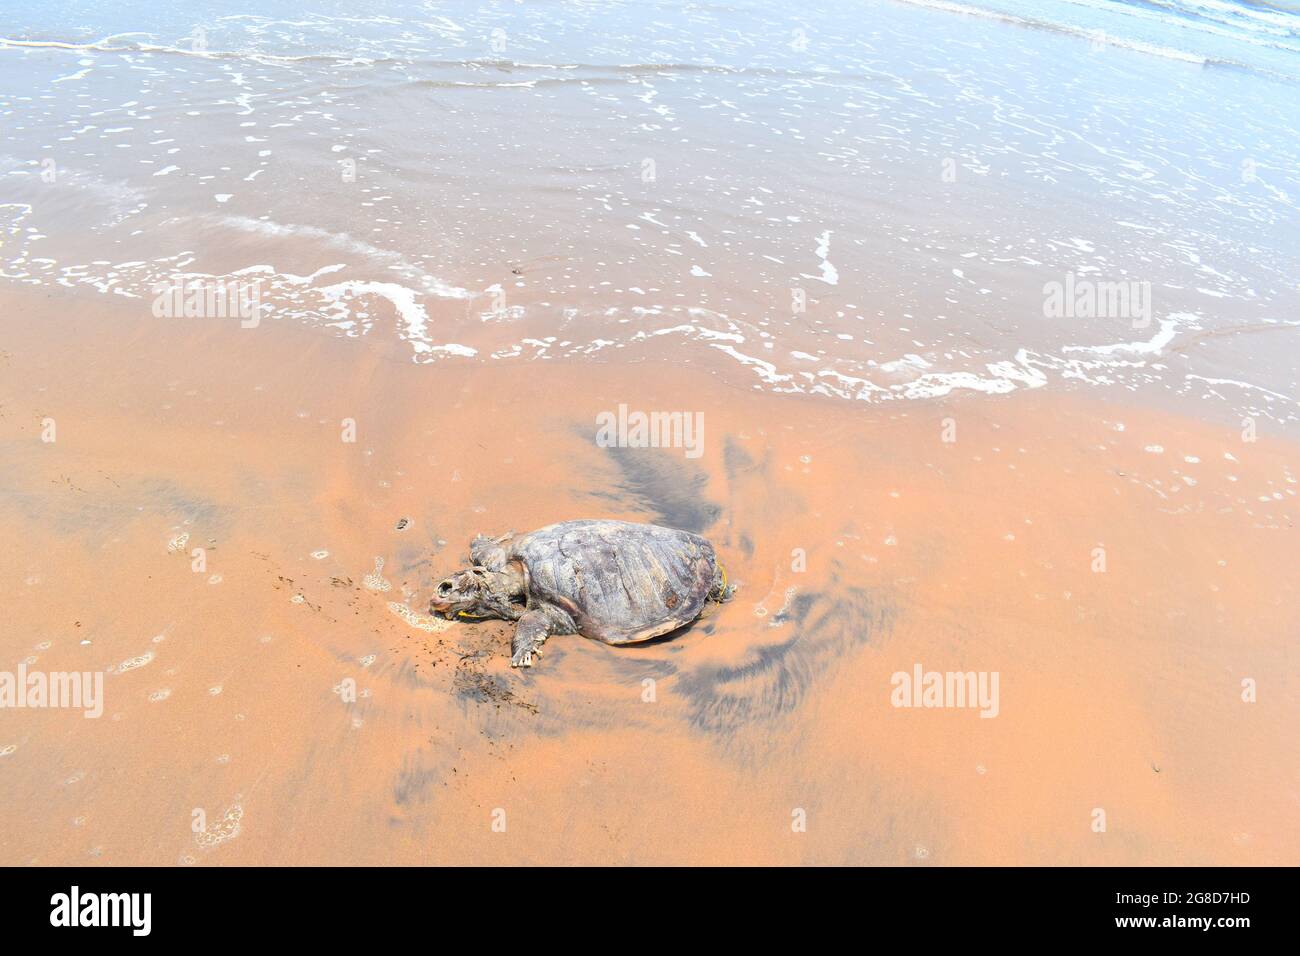 ORTOISE starb im INDISCHEN OZEAN. Traurig zu teilen, in der Indischen Ozean Schildkröte (Schildkröte), schwamm an Land und starb an der Küste. Stockfoto